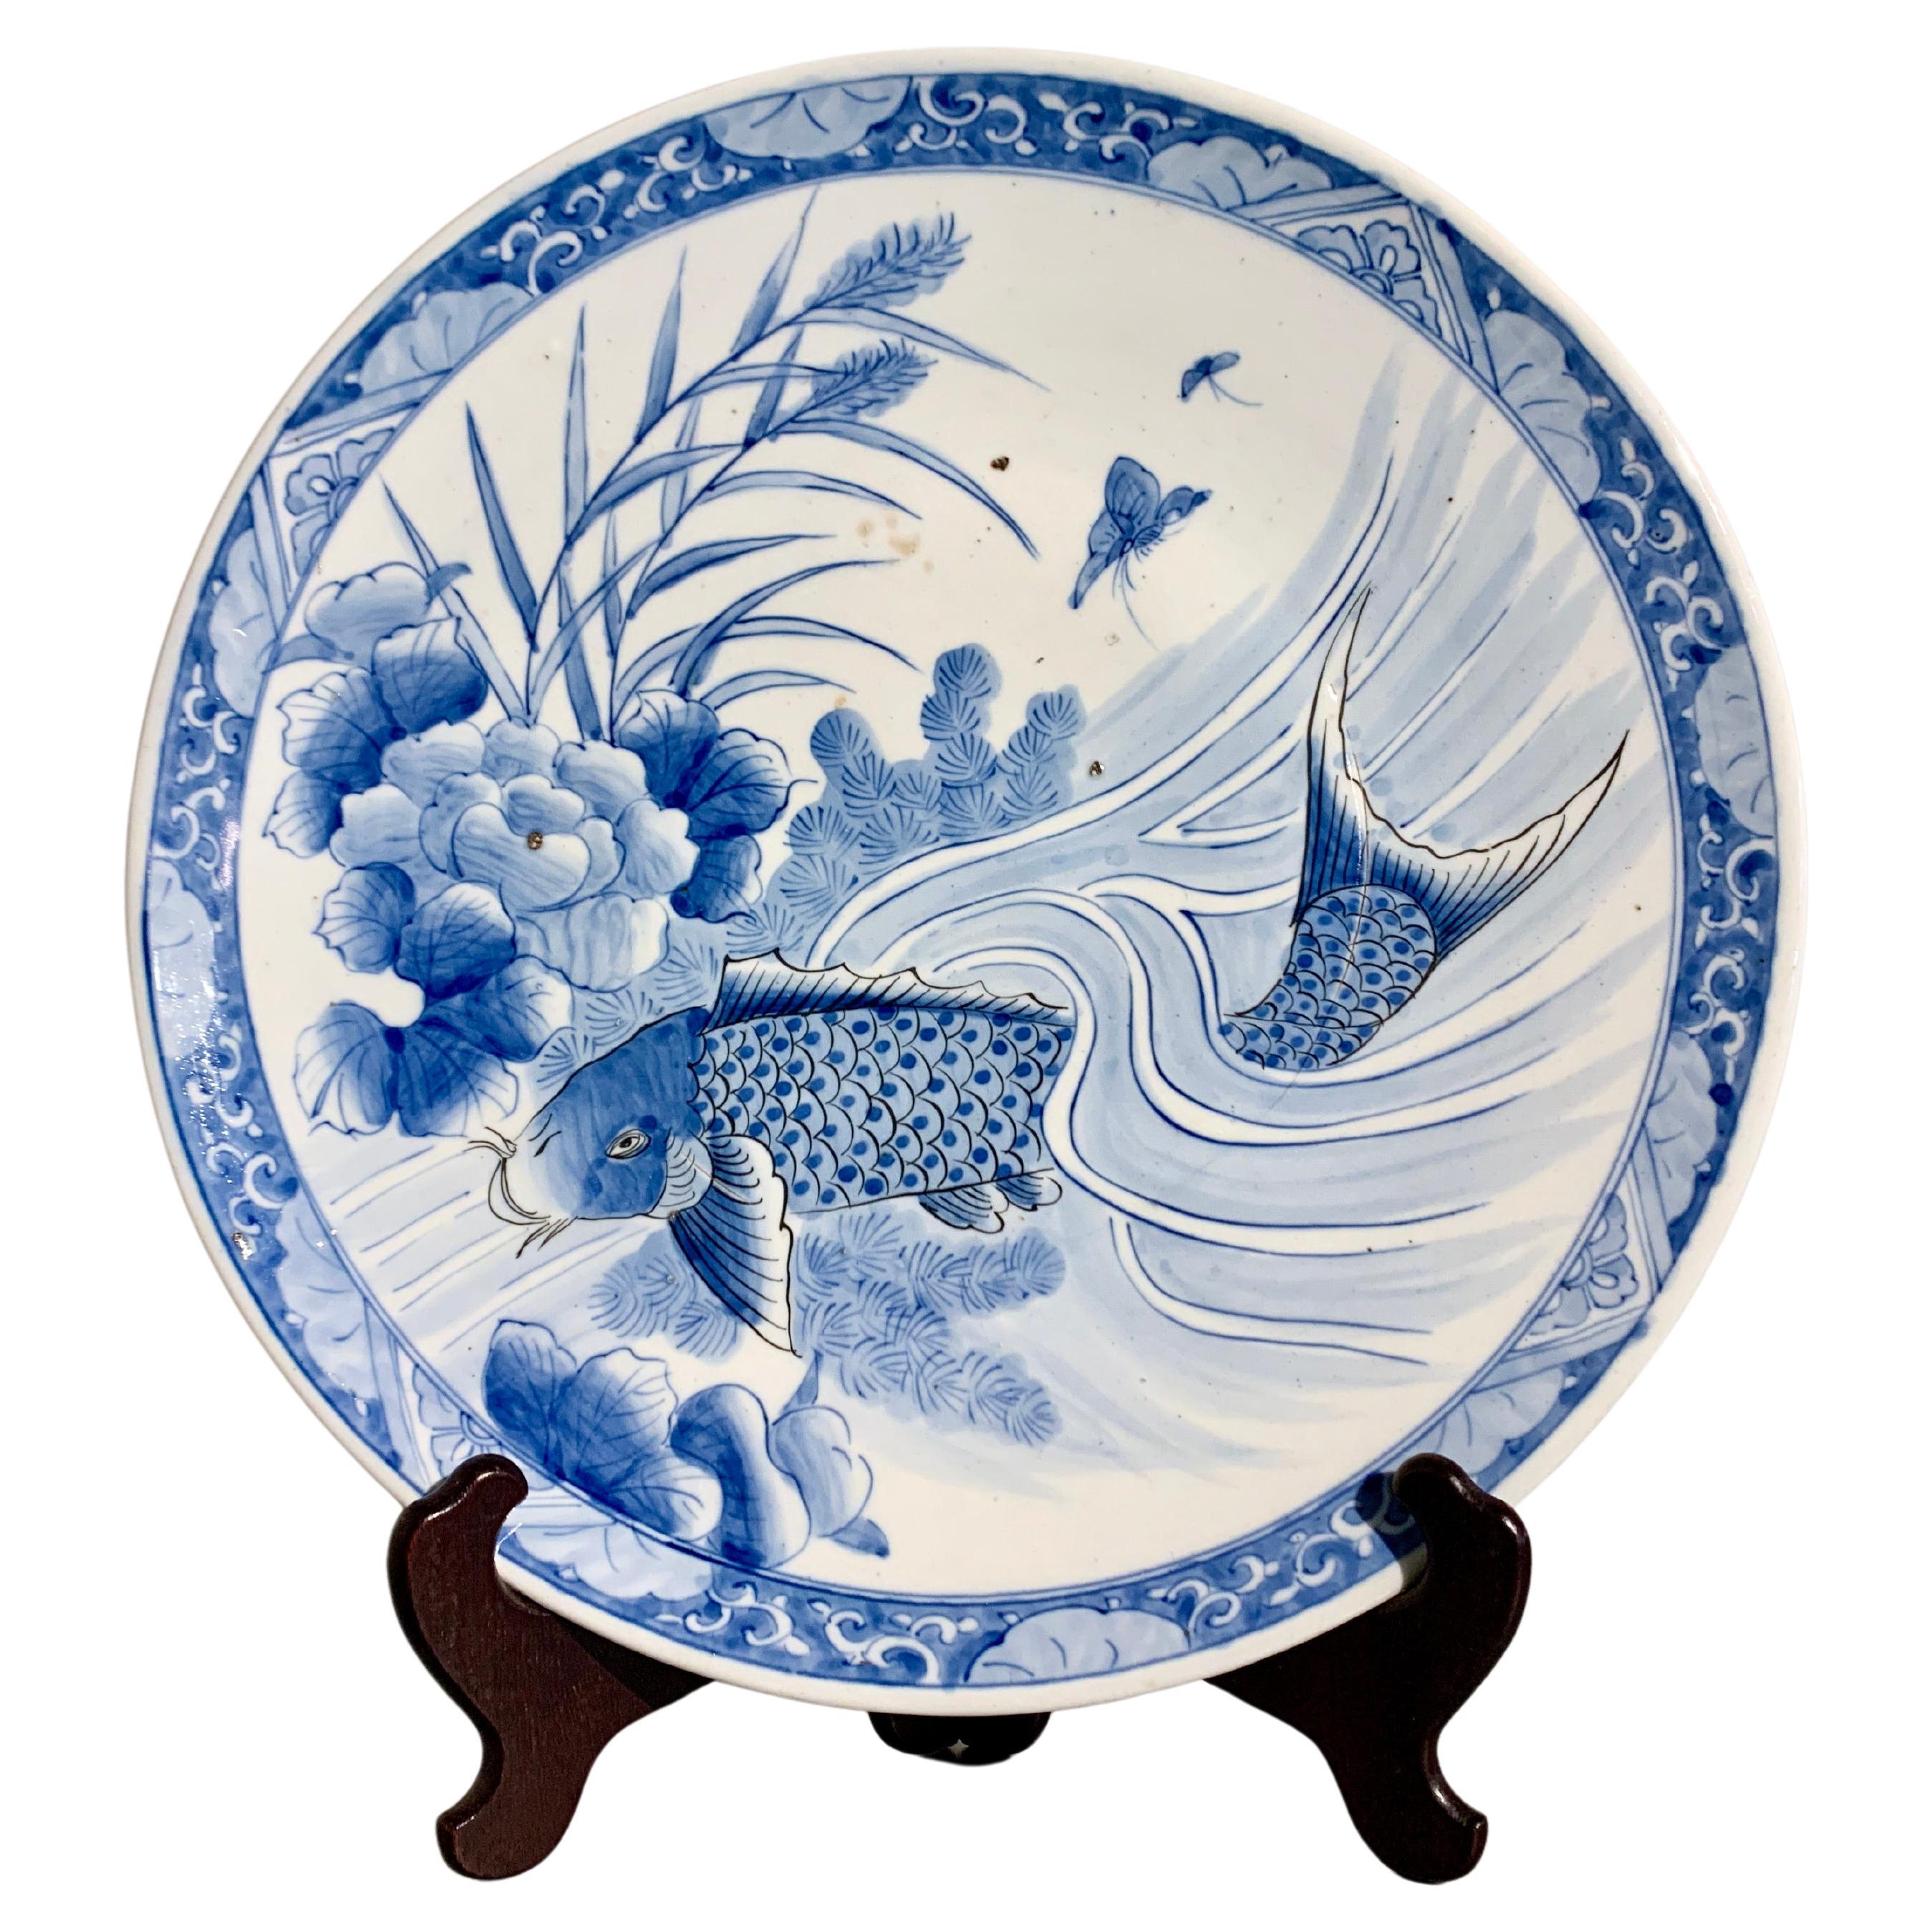 Grand chargeur japonais en porcelaine Arita bleu et blanc, période Edo, 19e siècle, Japon